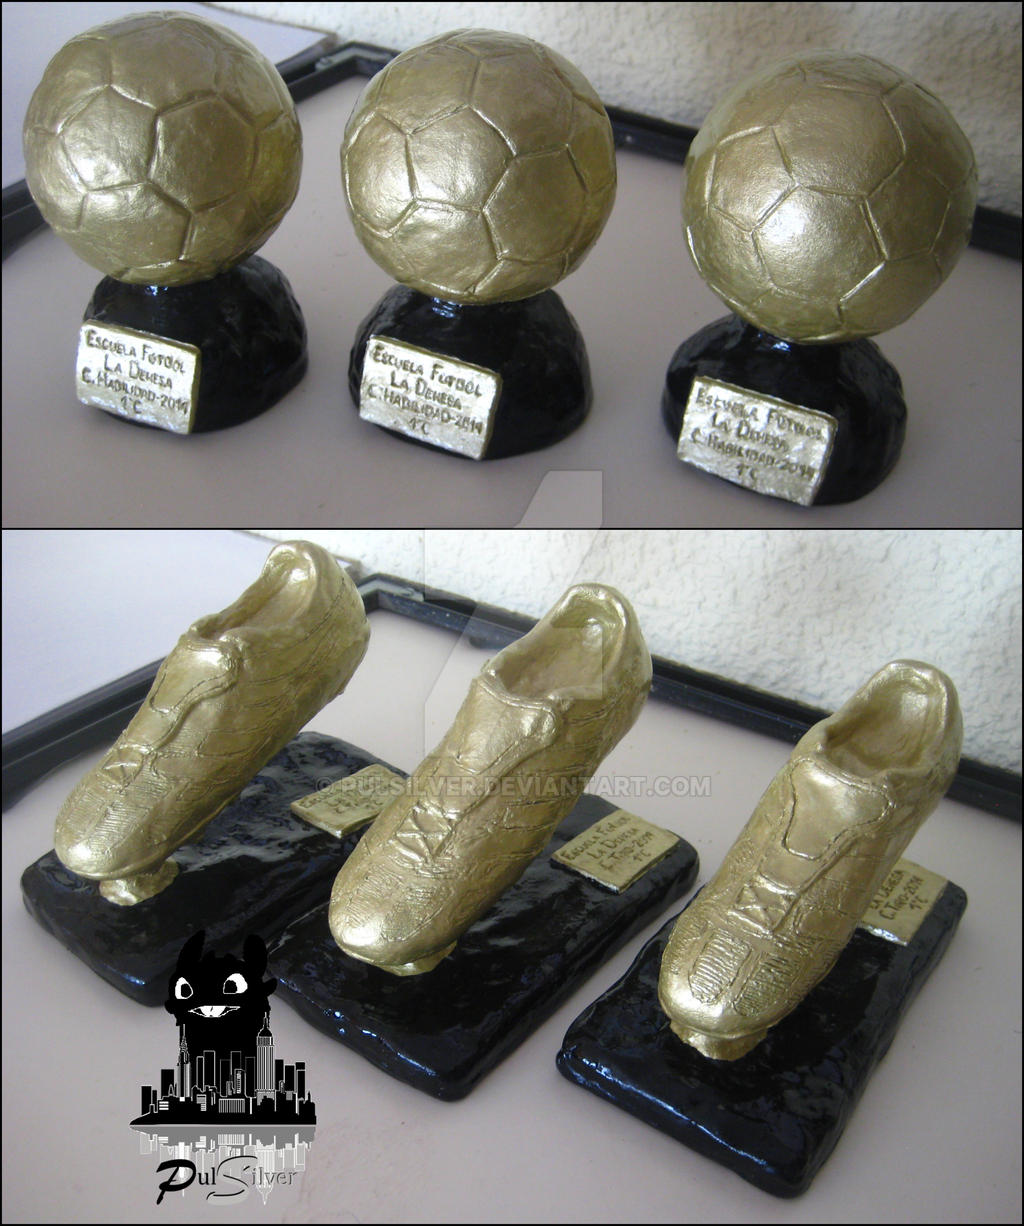 Trofeos de Futbol. Balon de Oro y Bota de Oro by Pulsilver on DeviantArt